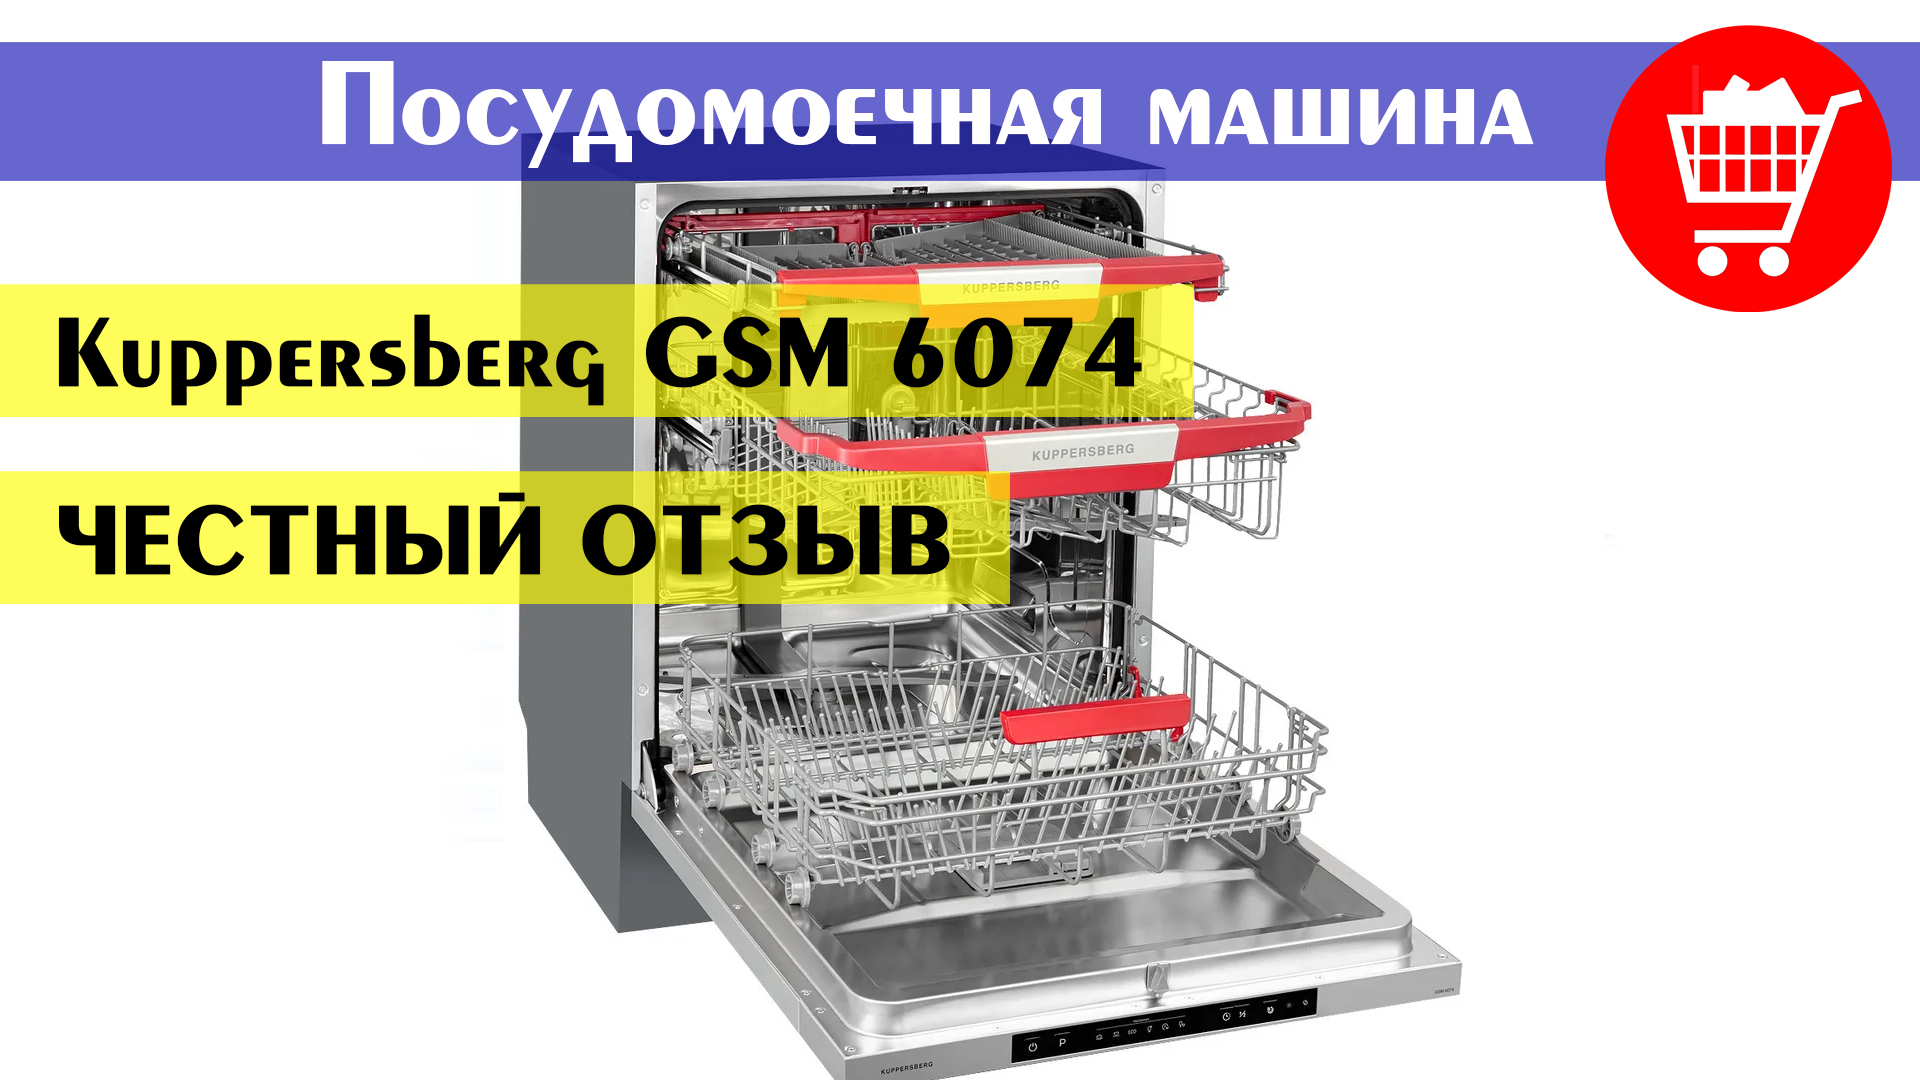 Машина kuppersberg gsm 4574. Посудомоечная машина Kuppersberg GSM 6074. Посудомоечная машина встраиваемая Kuppersberg GSM 4574. Встраиваемая посудомоечная машина 60 см Kuppersberg GSM 6074. Kuppersberg GS 6074.